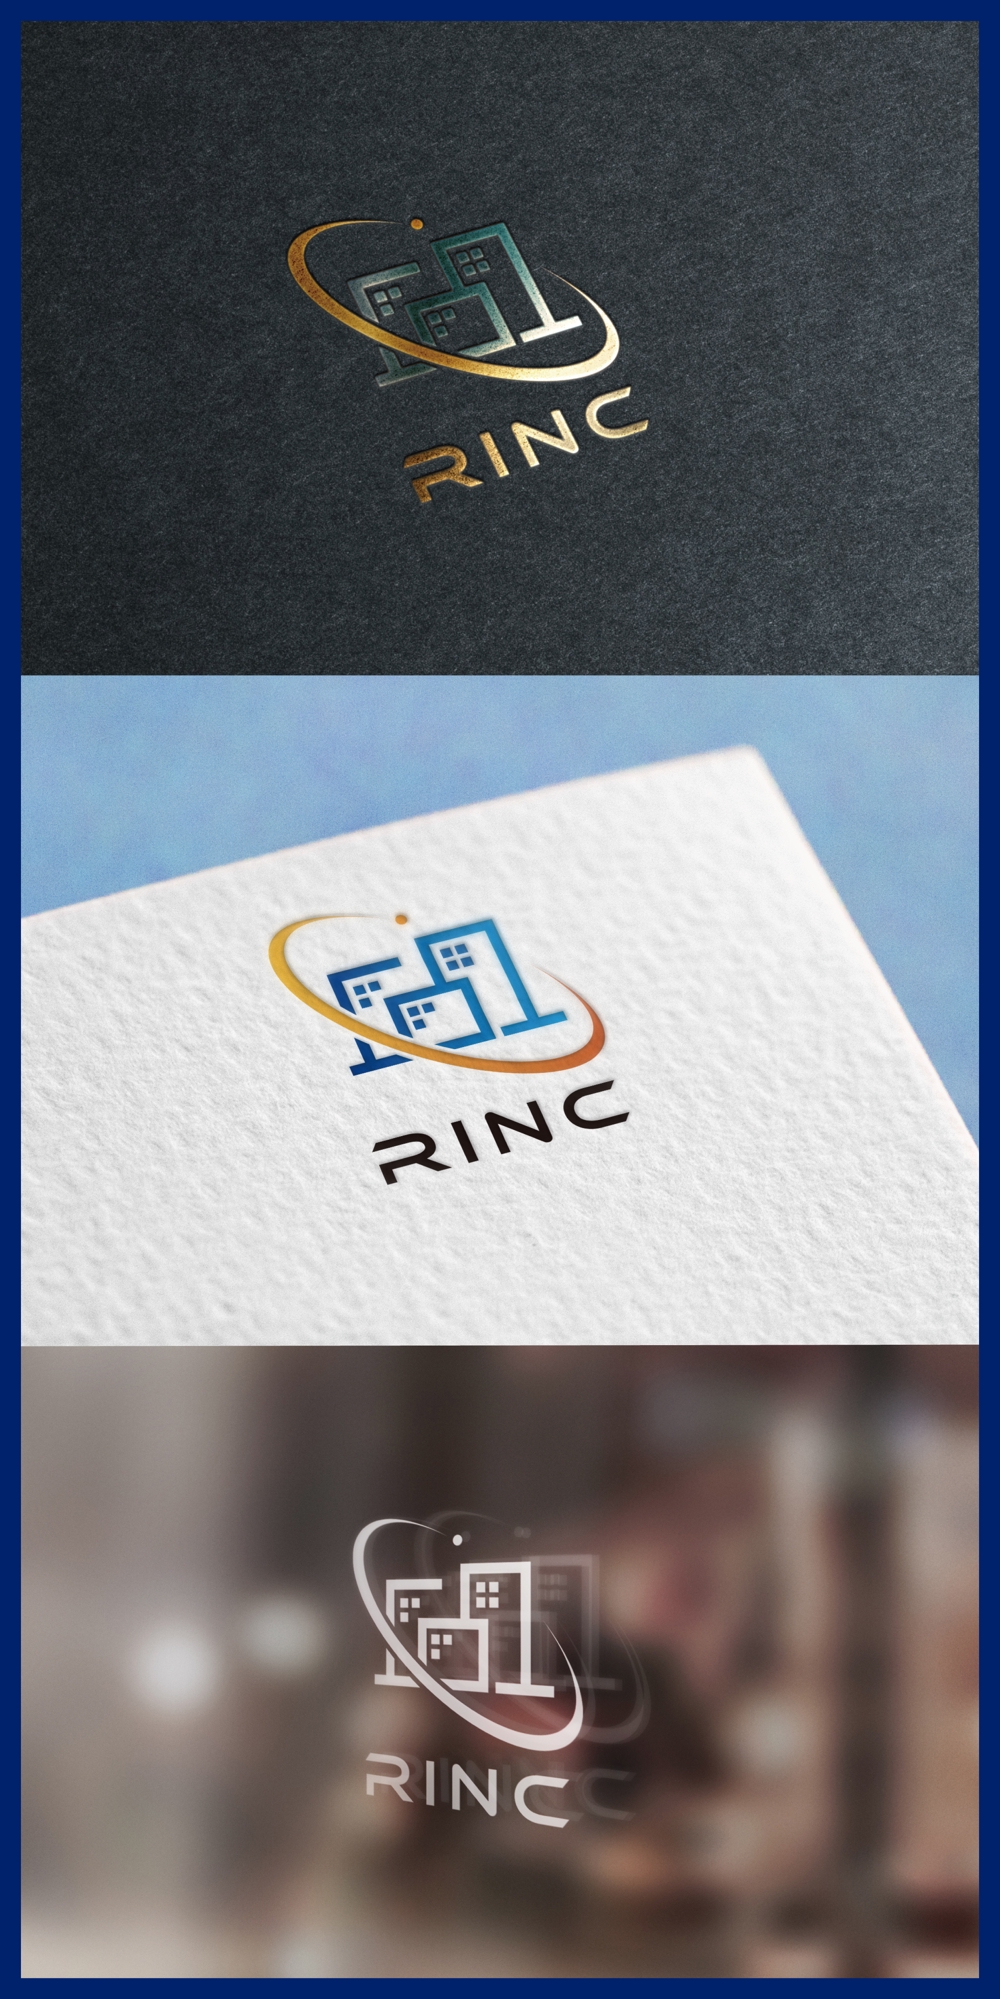 RINC_logo01_01.jpg